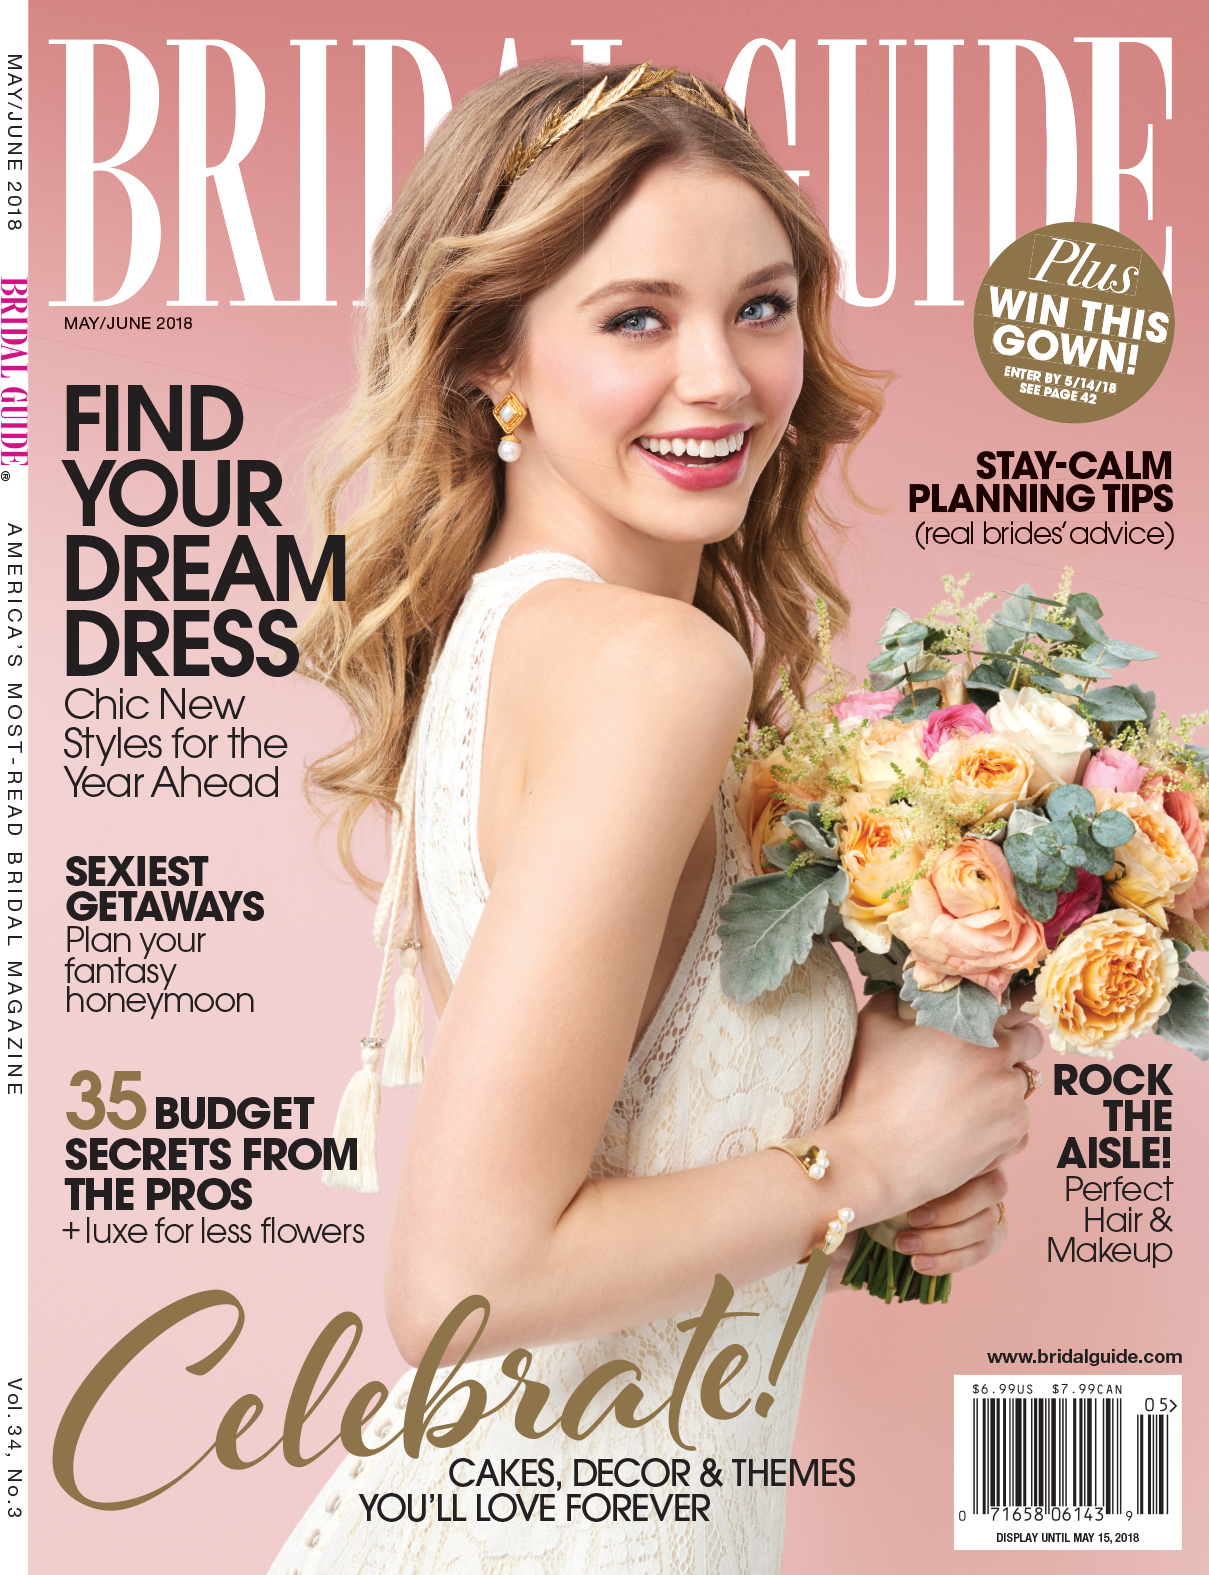 Bridal guide May.June 2018